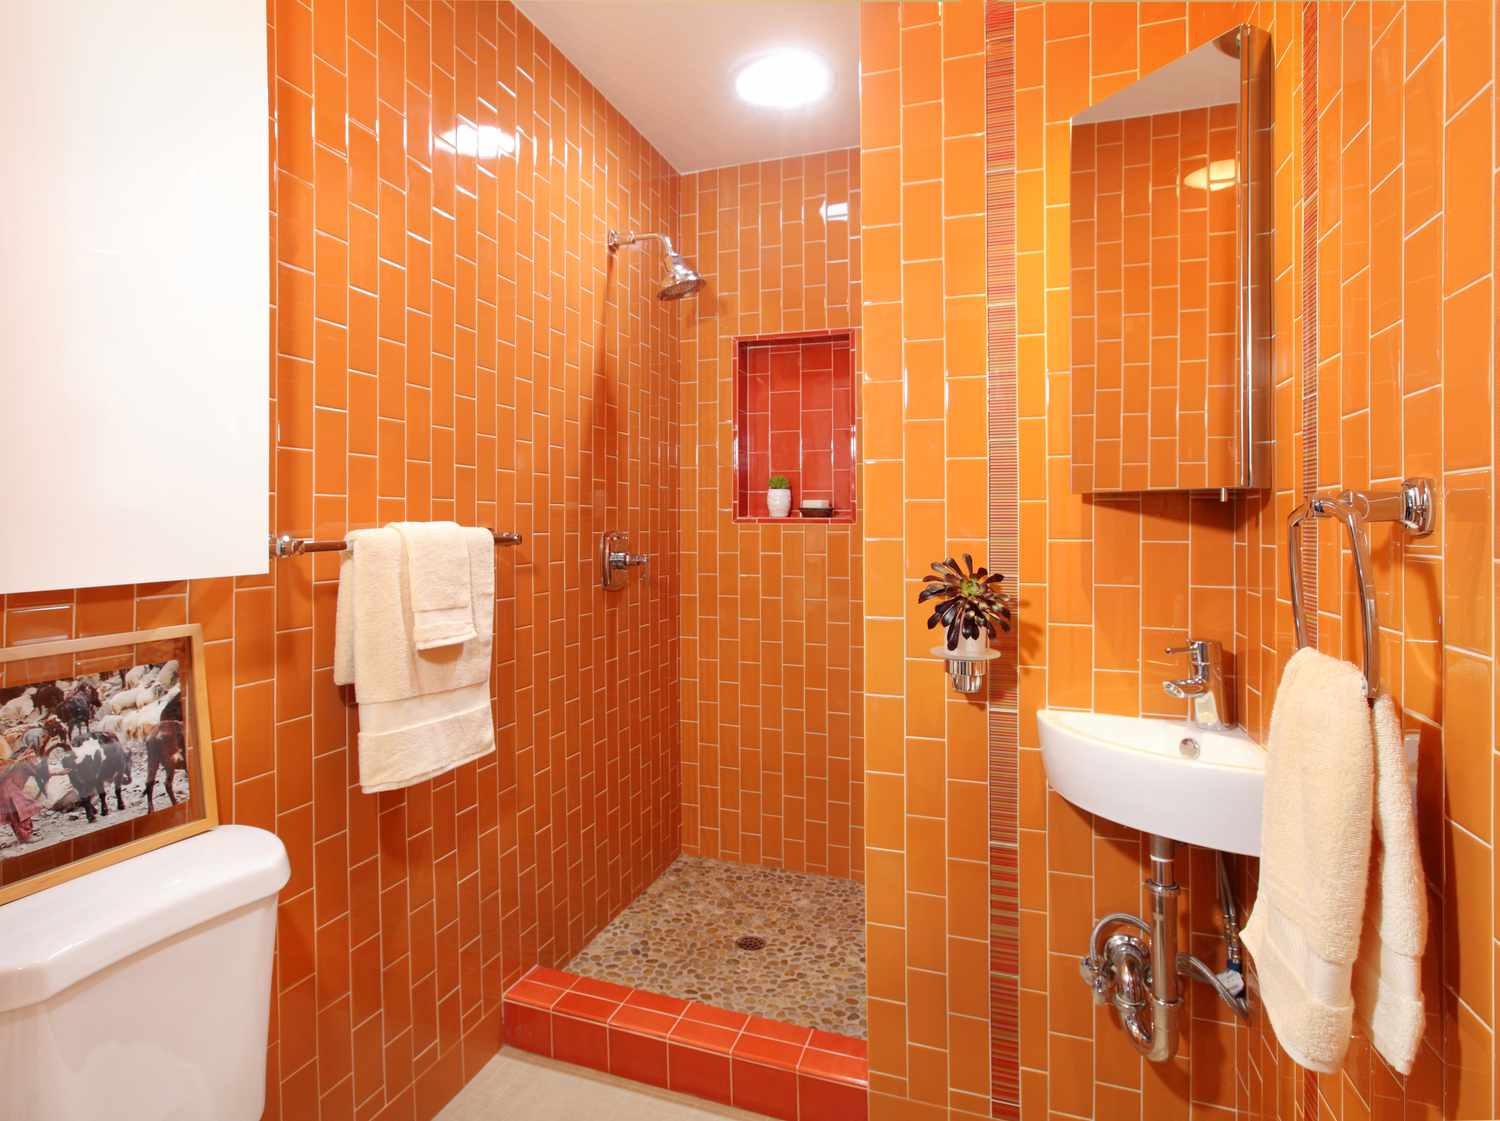 Helles und anregendes Badezimmer mit monochromer oranger Farbpalette.